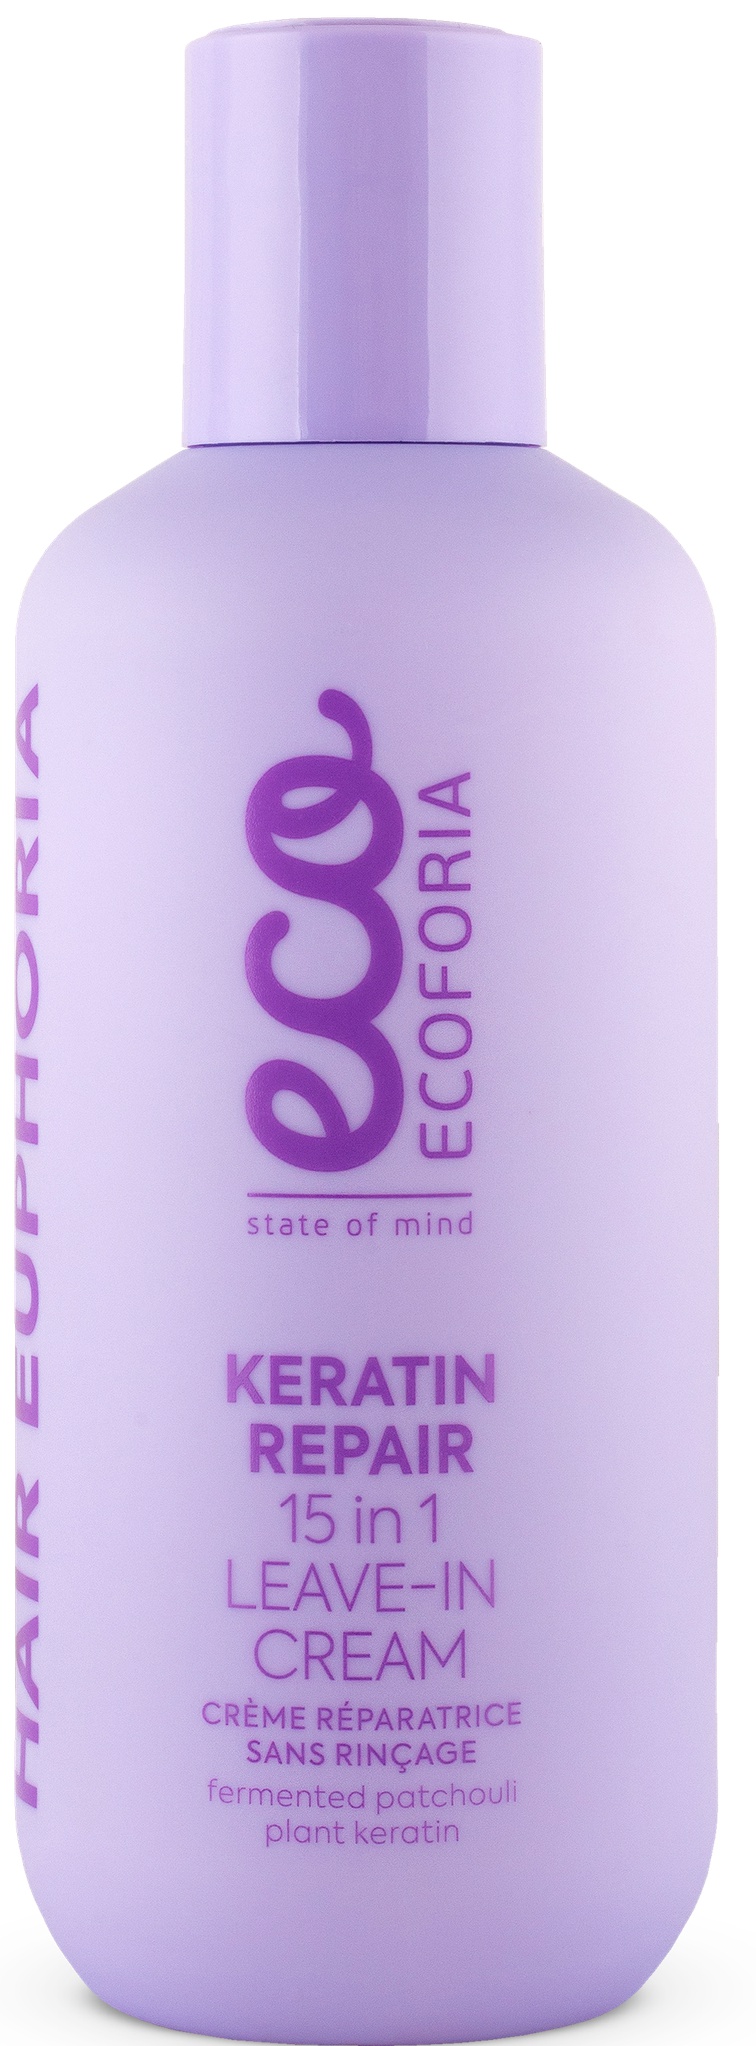 Ecoforia Keratin Repair 15 in 1 Leave-In Cream